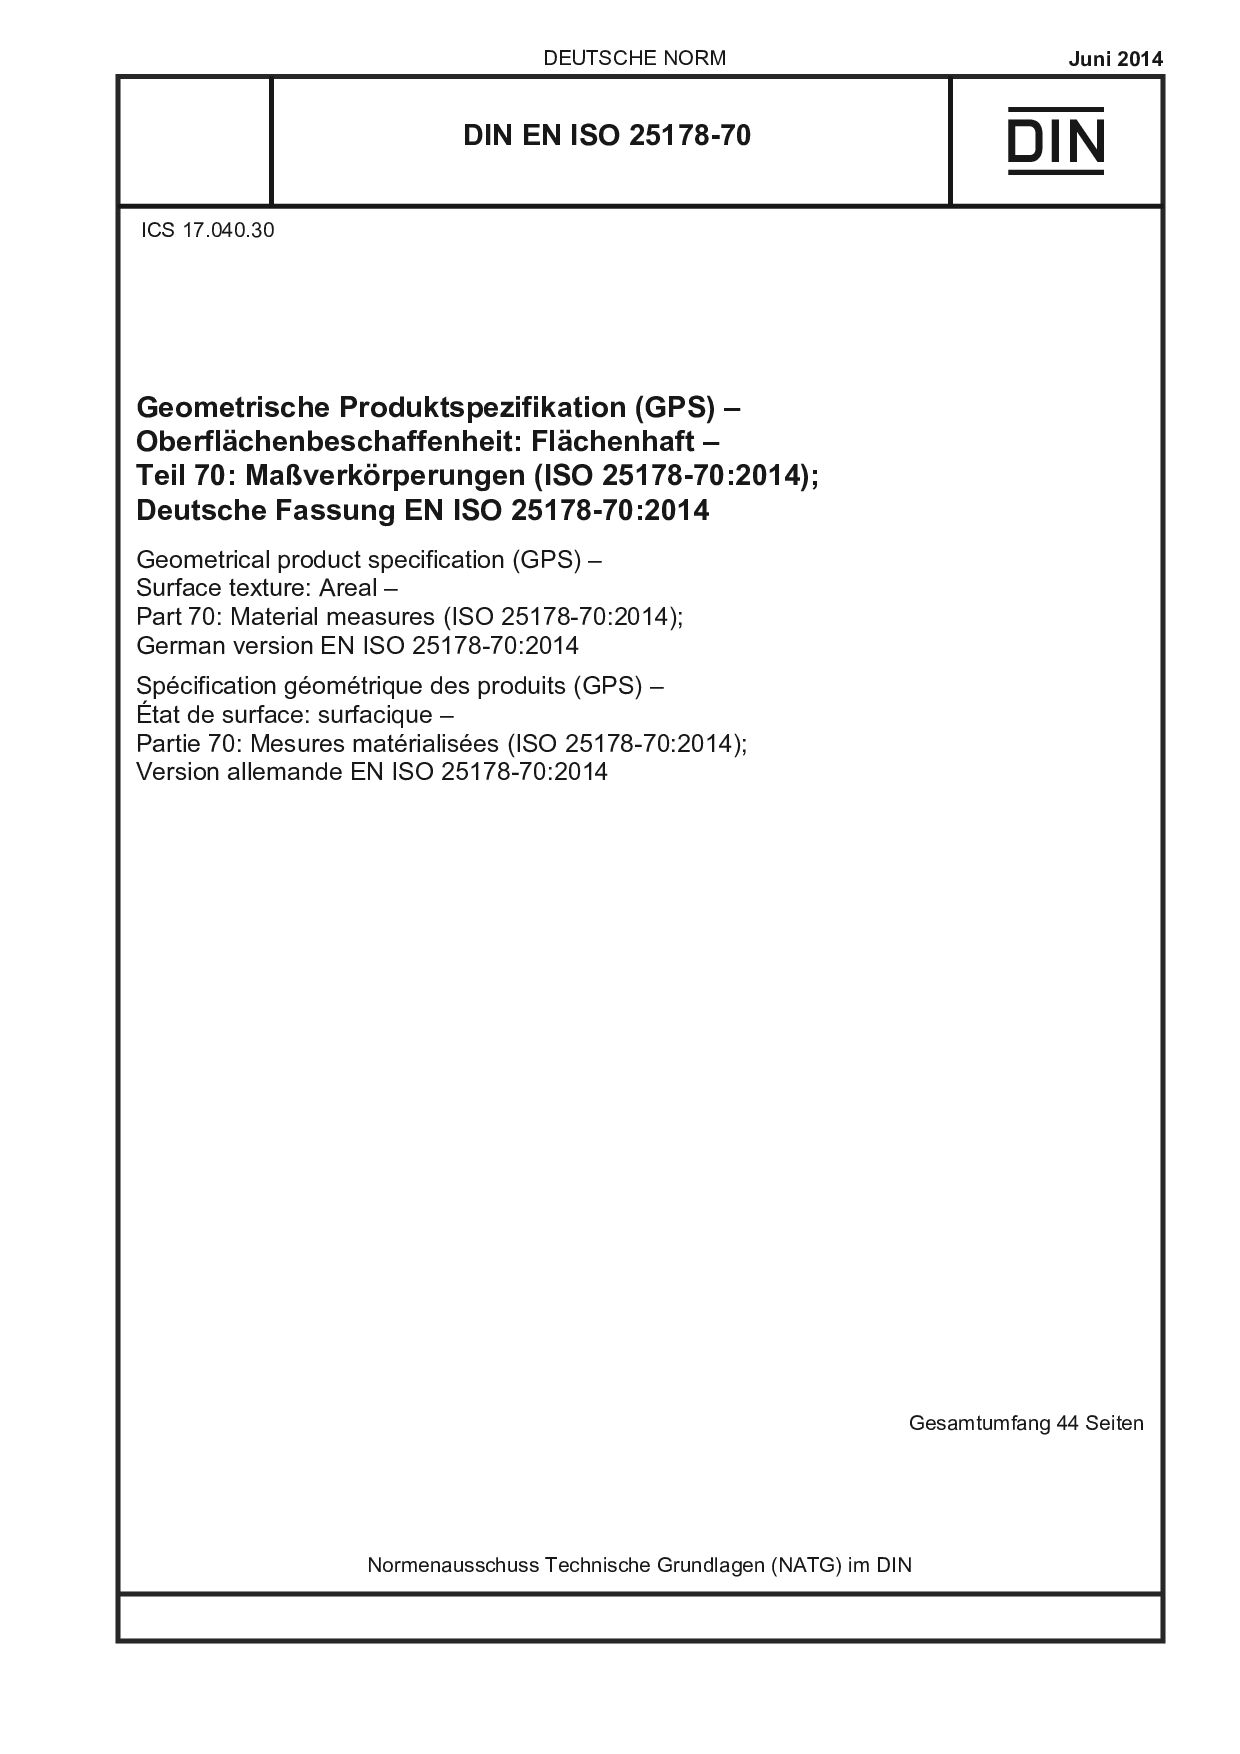 DIN EN ISO 25178-70:2014封面图